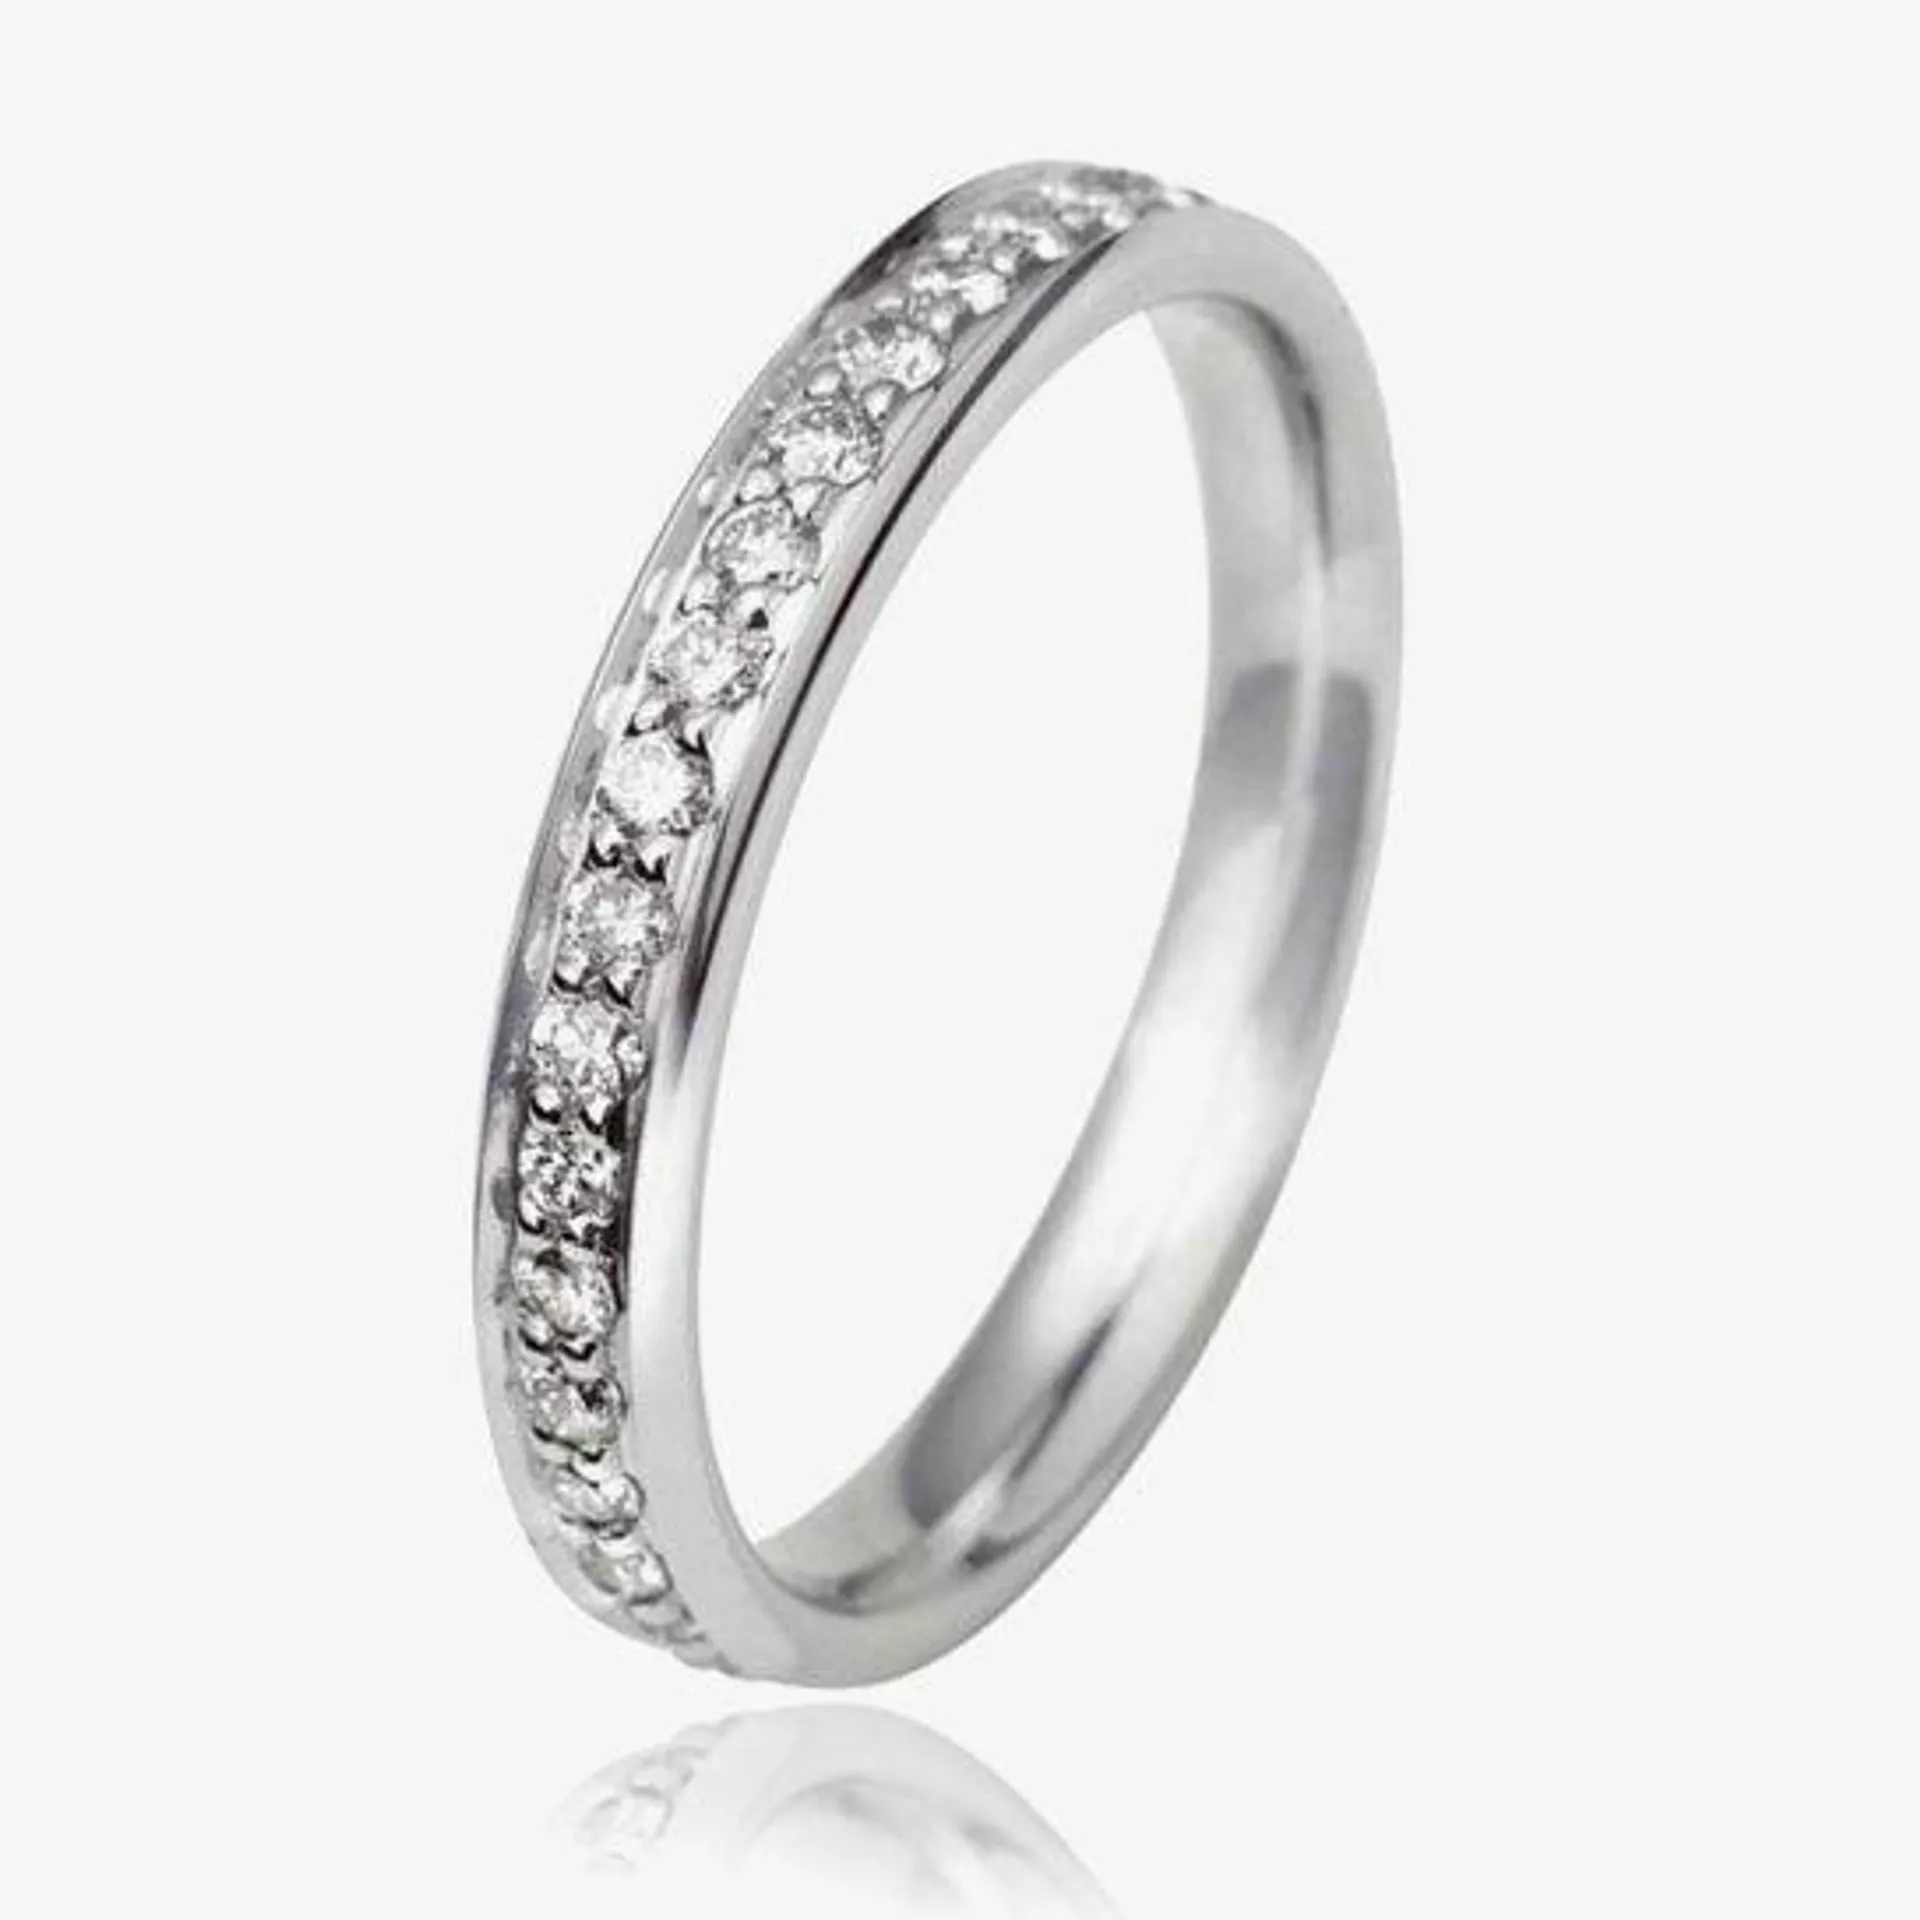 18ct White Gold 3mm Full Grain Set Diamond Court Wedding Ring WG11/3R150 18W HSI